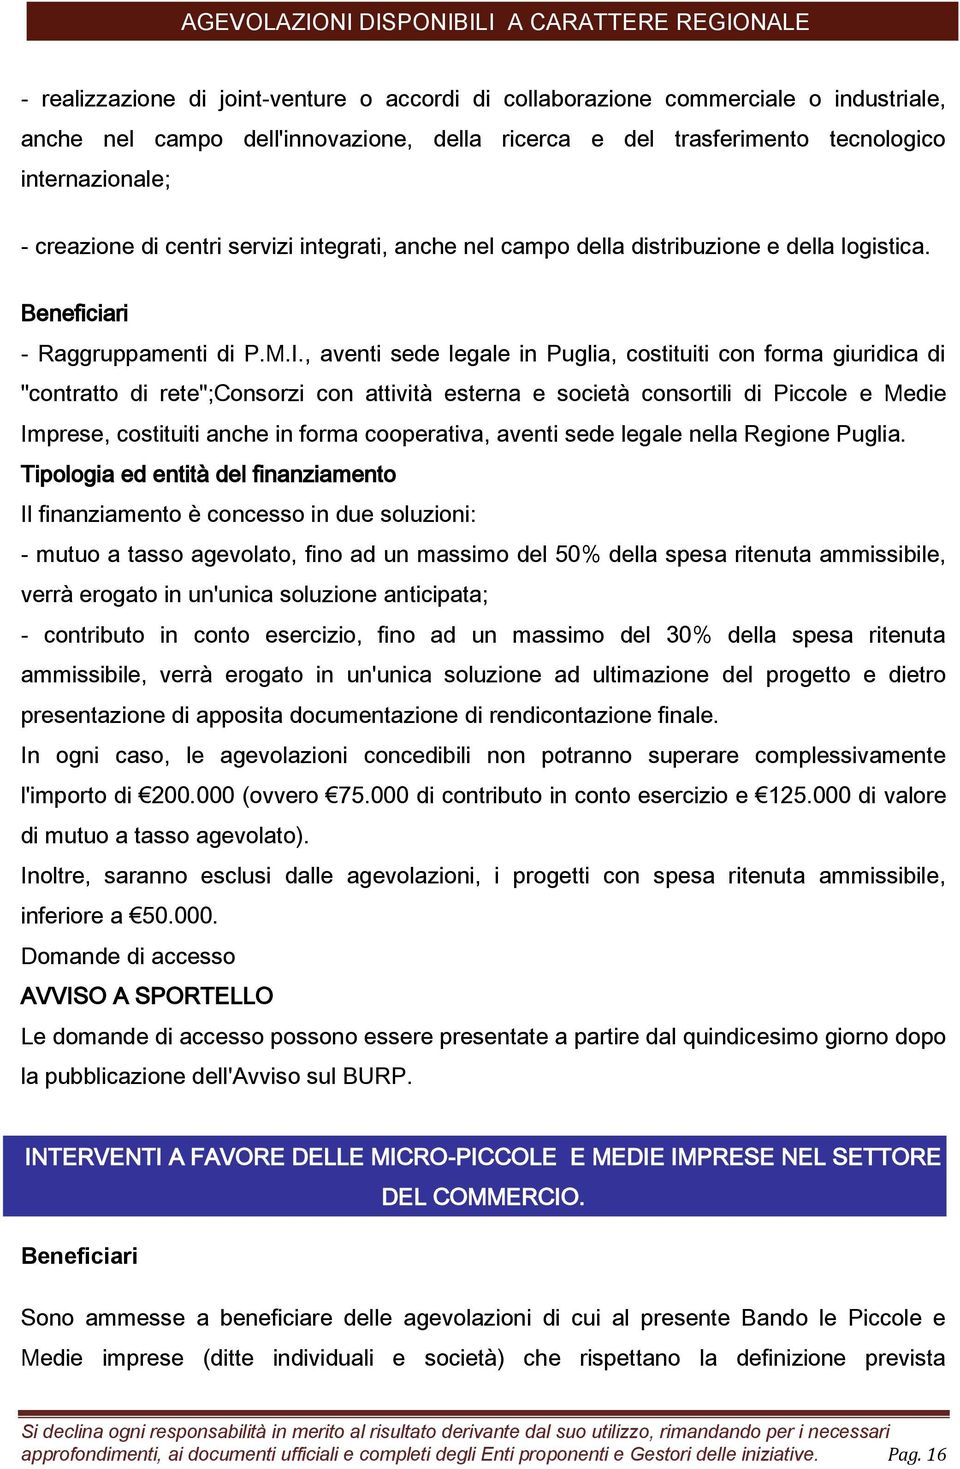 , aventi sede legale in Puglia, costituiti con forma giuridica di "contratto di rete";consorzi con attività esterna e società consortili di Piccole e Medie Imprese, costituiti anche in forma